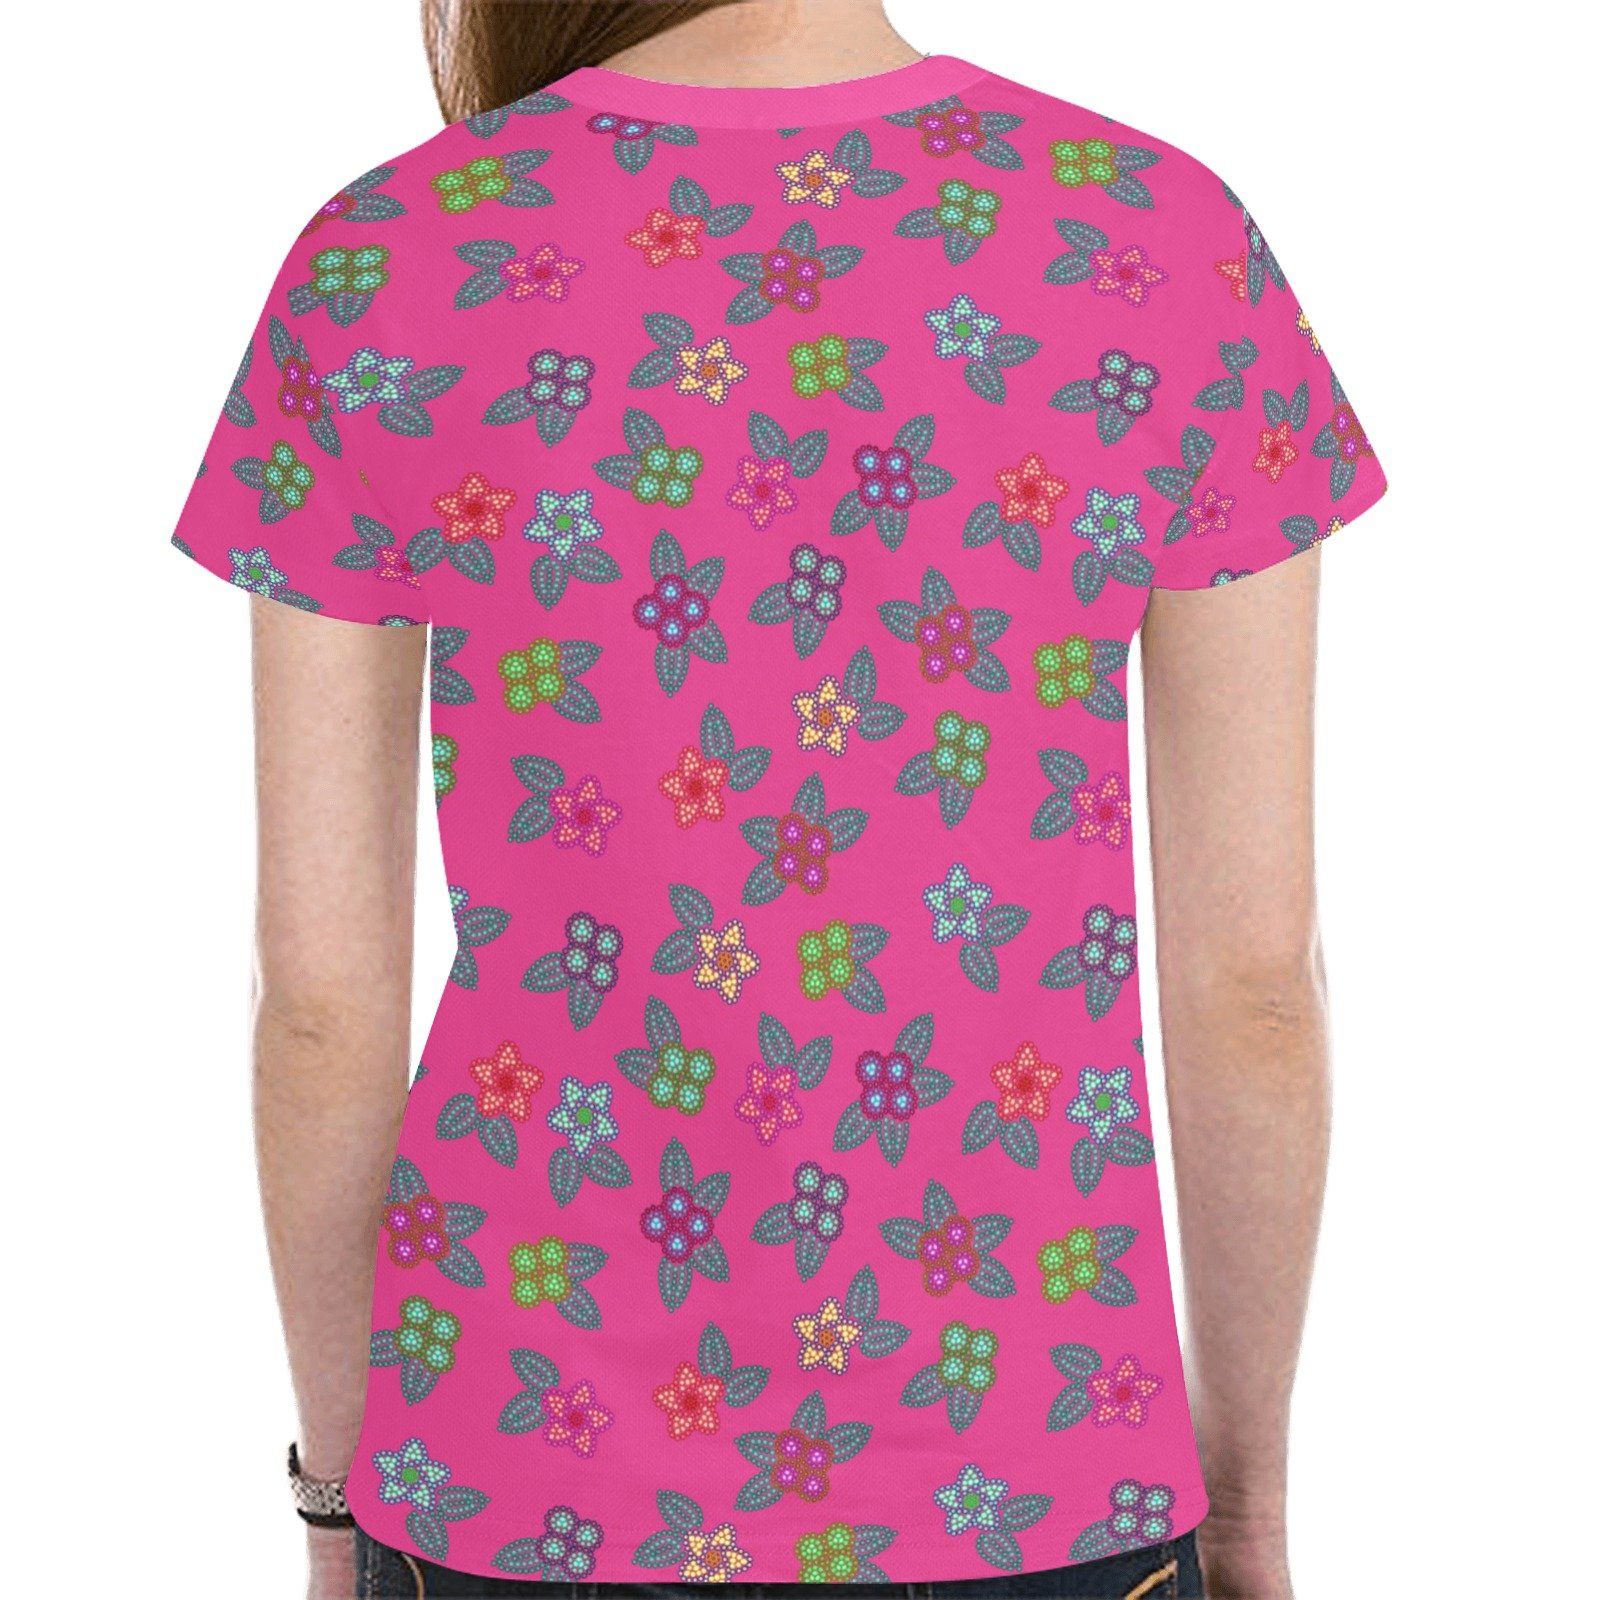 Berry Flowers New All Over Print T-shirt for Women (Model T45) tshirt e-joyer 